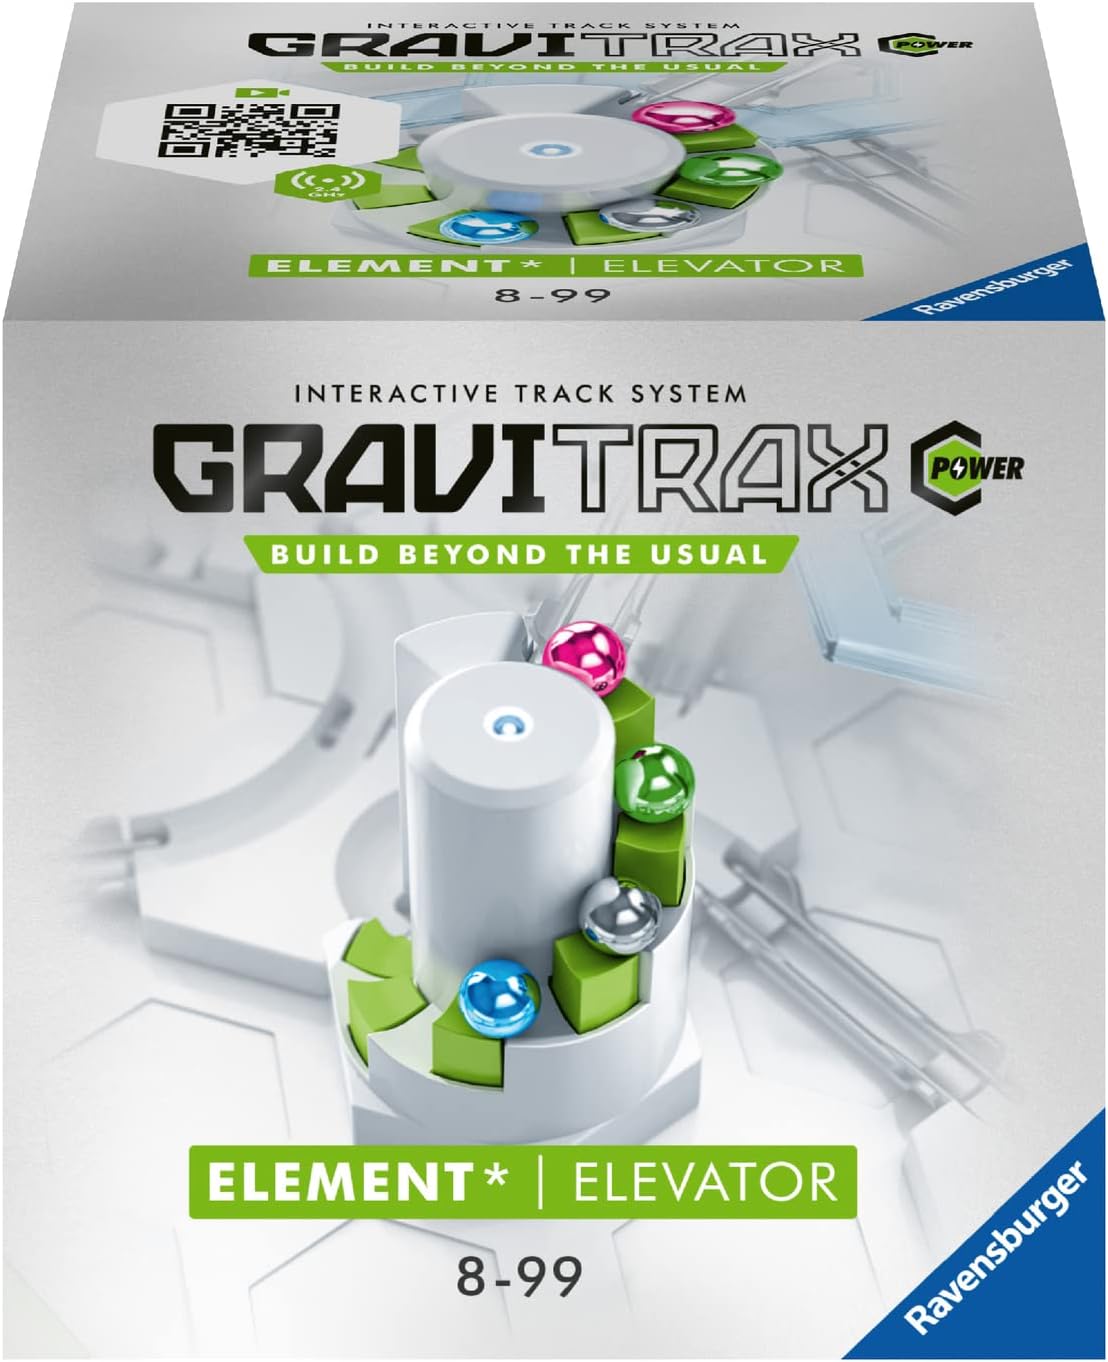 Extensie - GraviTrax Power - Element - Elevator | Ravensburger